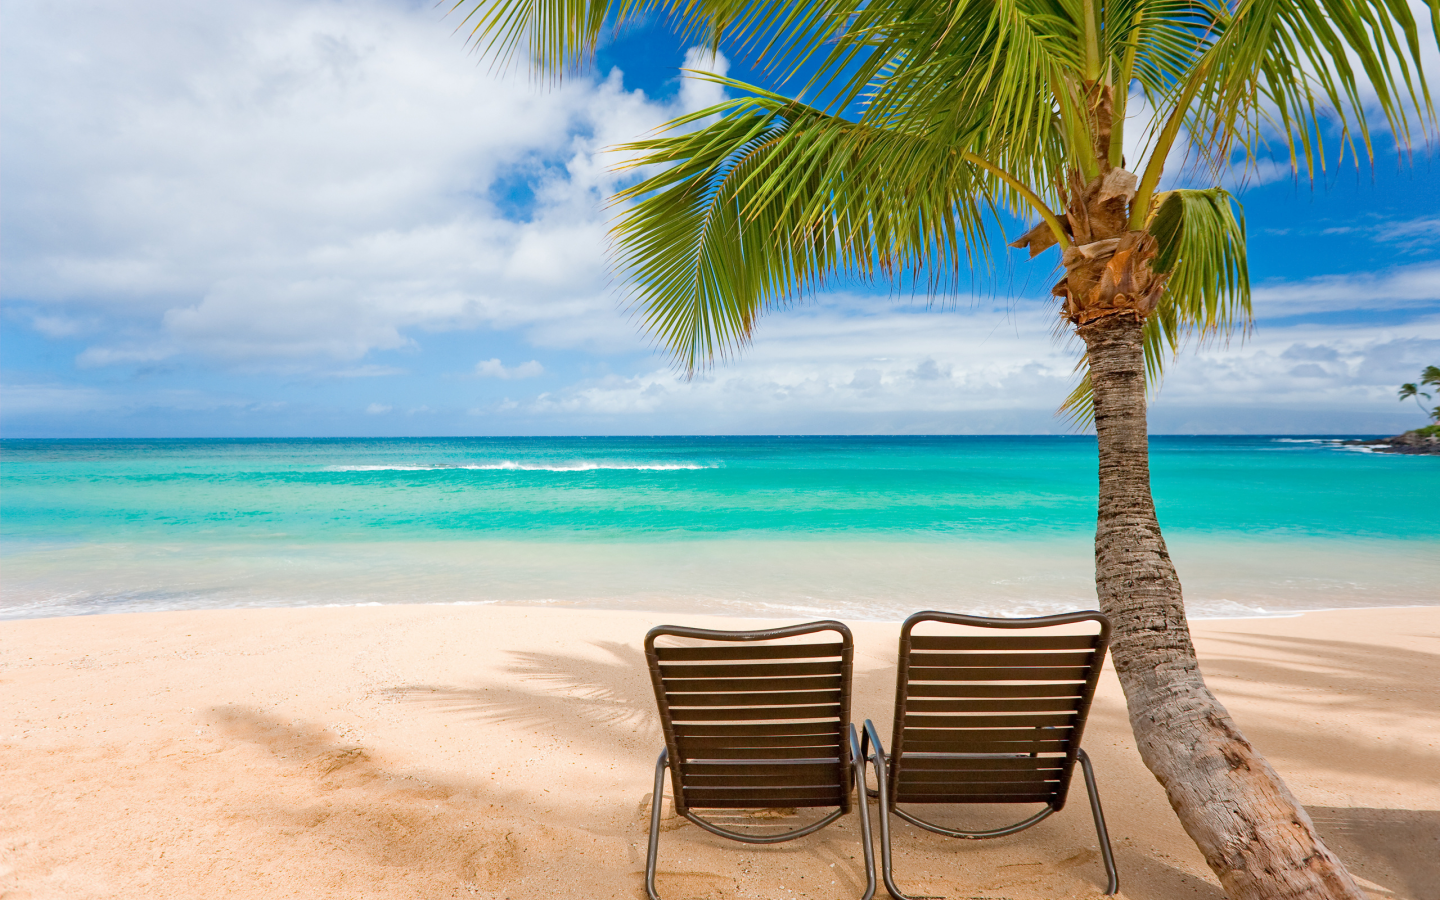 берег, фото, пальмы, шезлонги, стулья, острова, отдых, волны, деревья, море, пляж, пейзажи, настроение, океан, вода, жара, кресла, лето